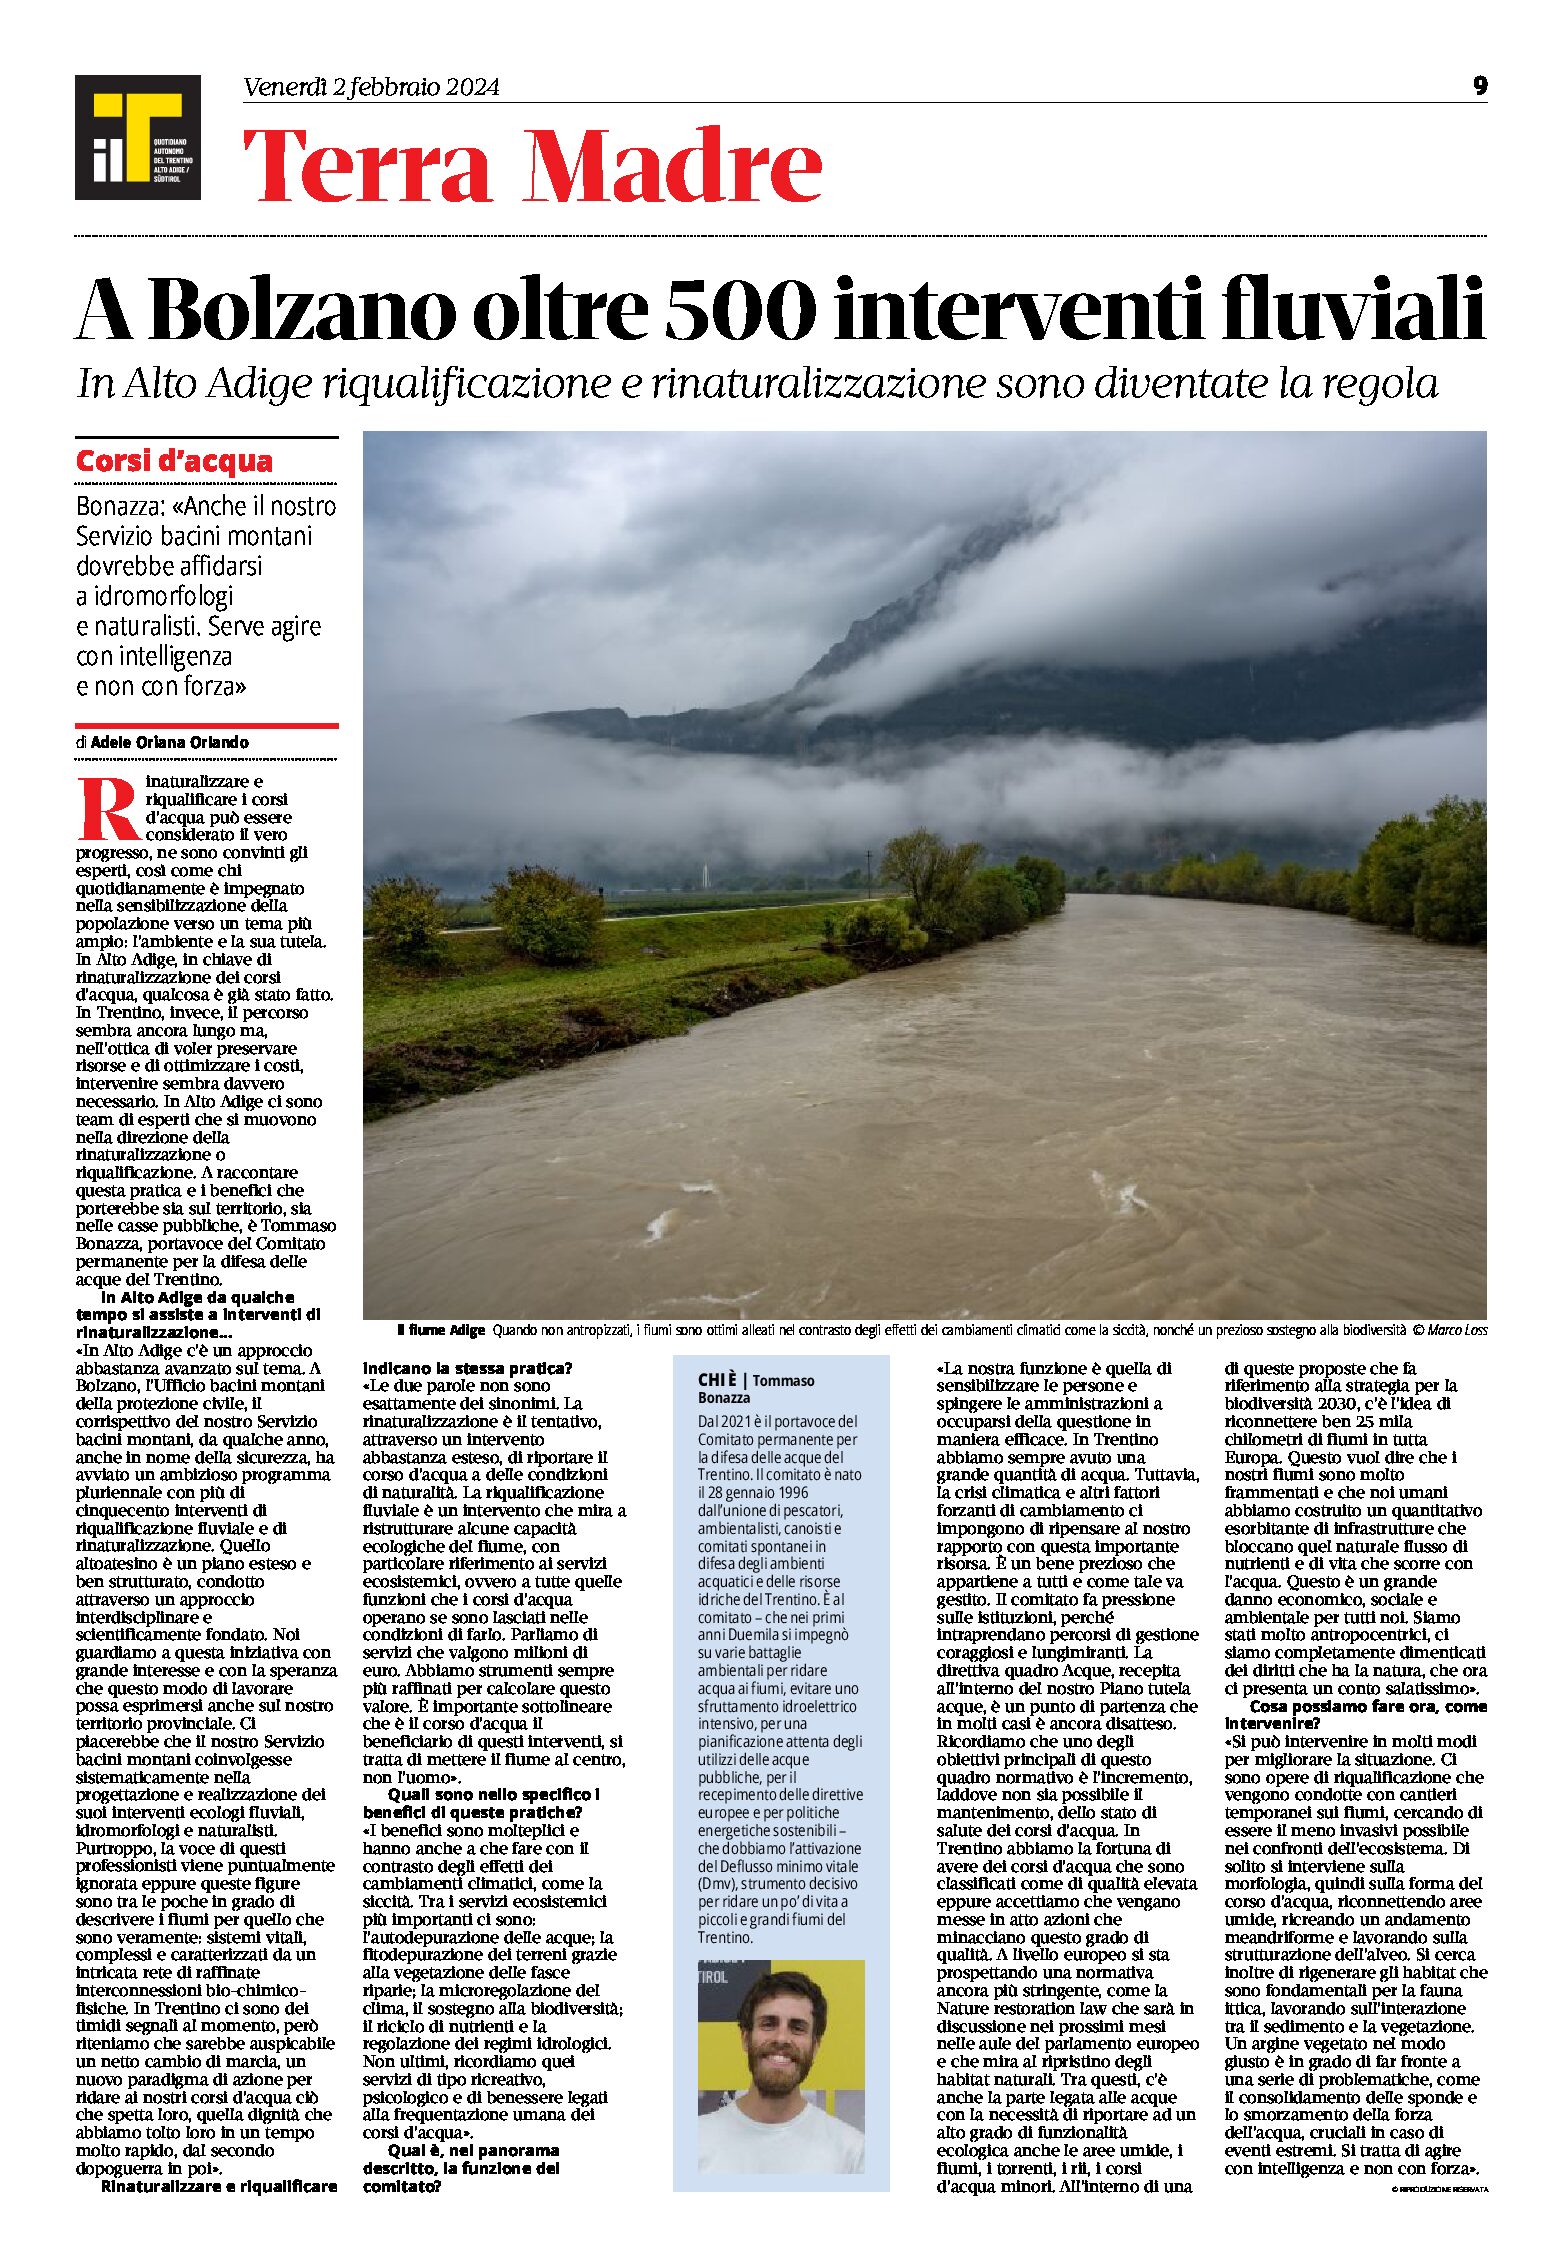 Bolzano: oltre 500 interventi fluviali. Rinaturalizzazione e riqualificazione dei corsi d’acqua